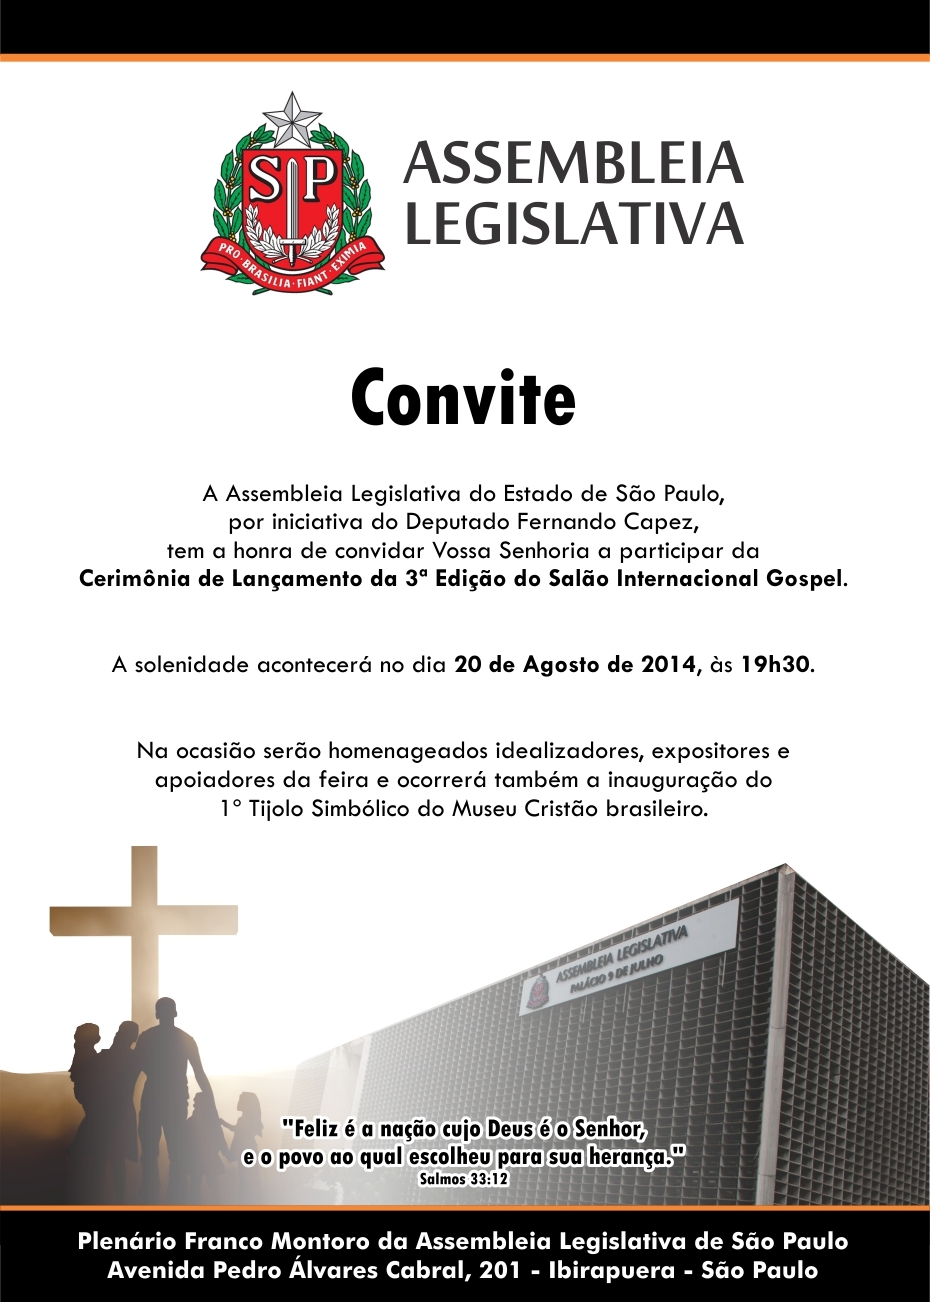 III Salão Internacional Gospel será homenageado na Assembleia Legislativa de São Paulo